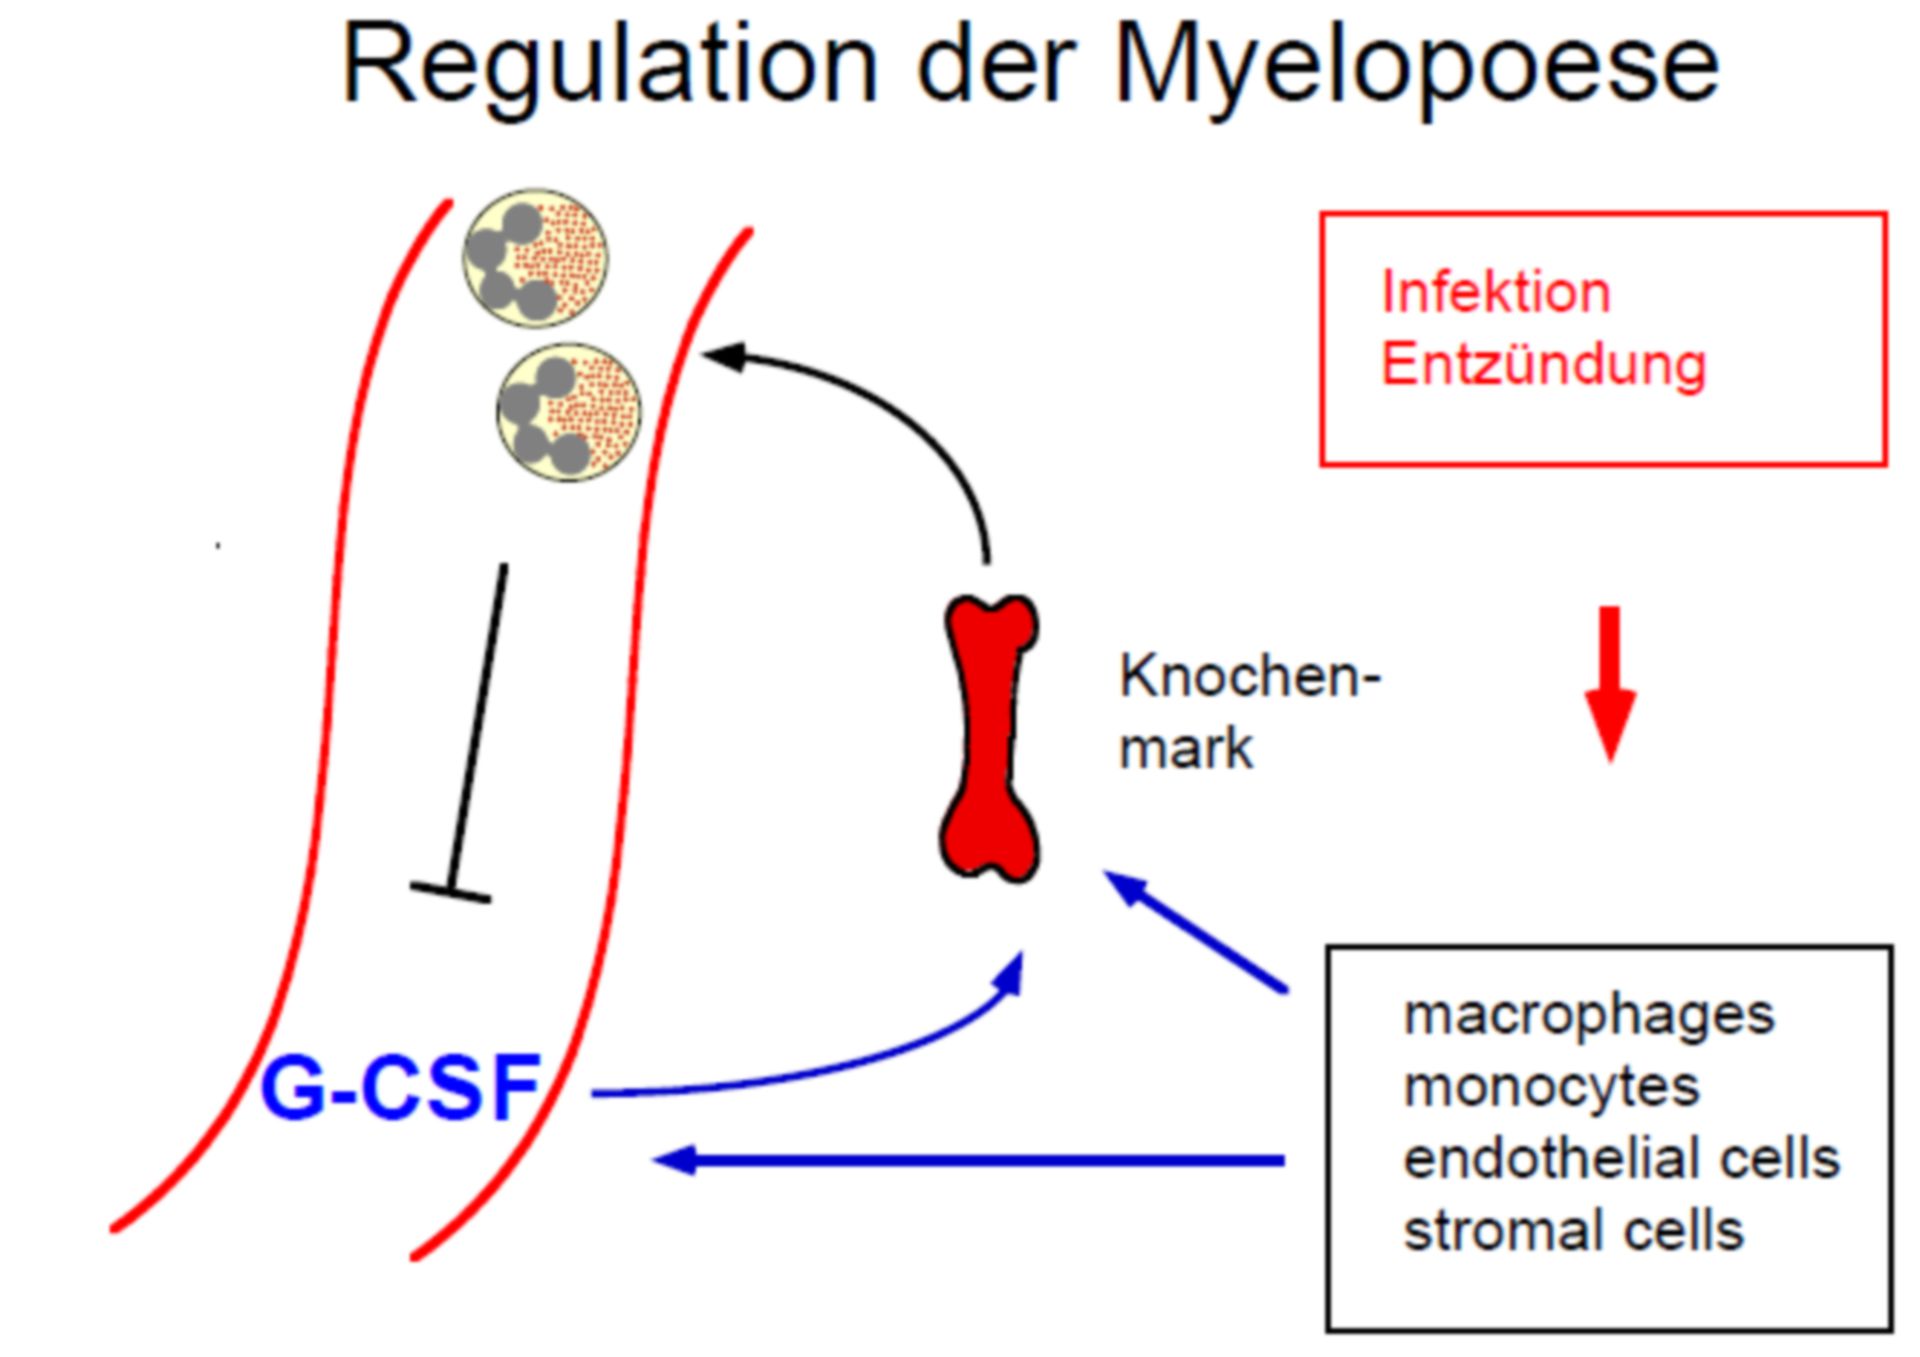 Regulation der Myelopoese